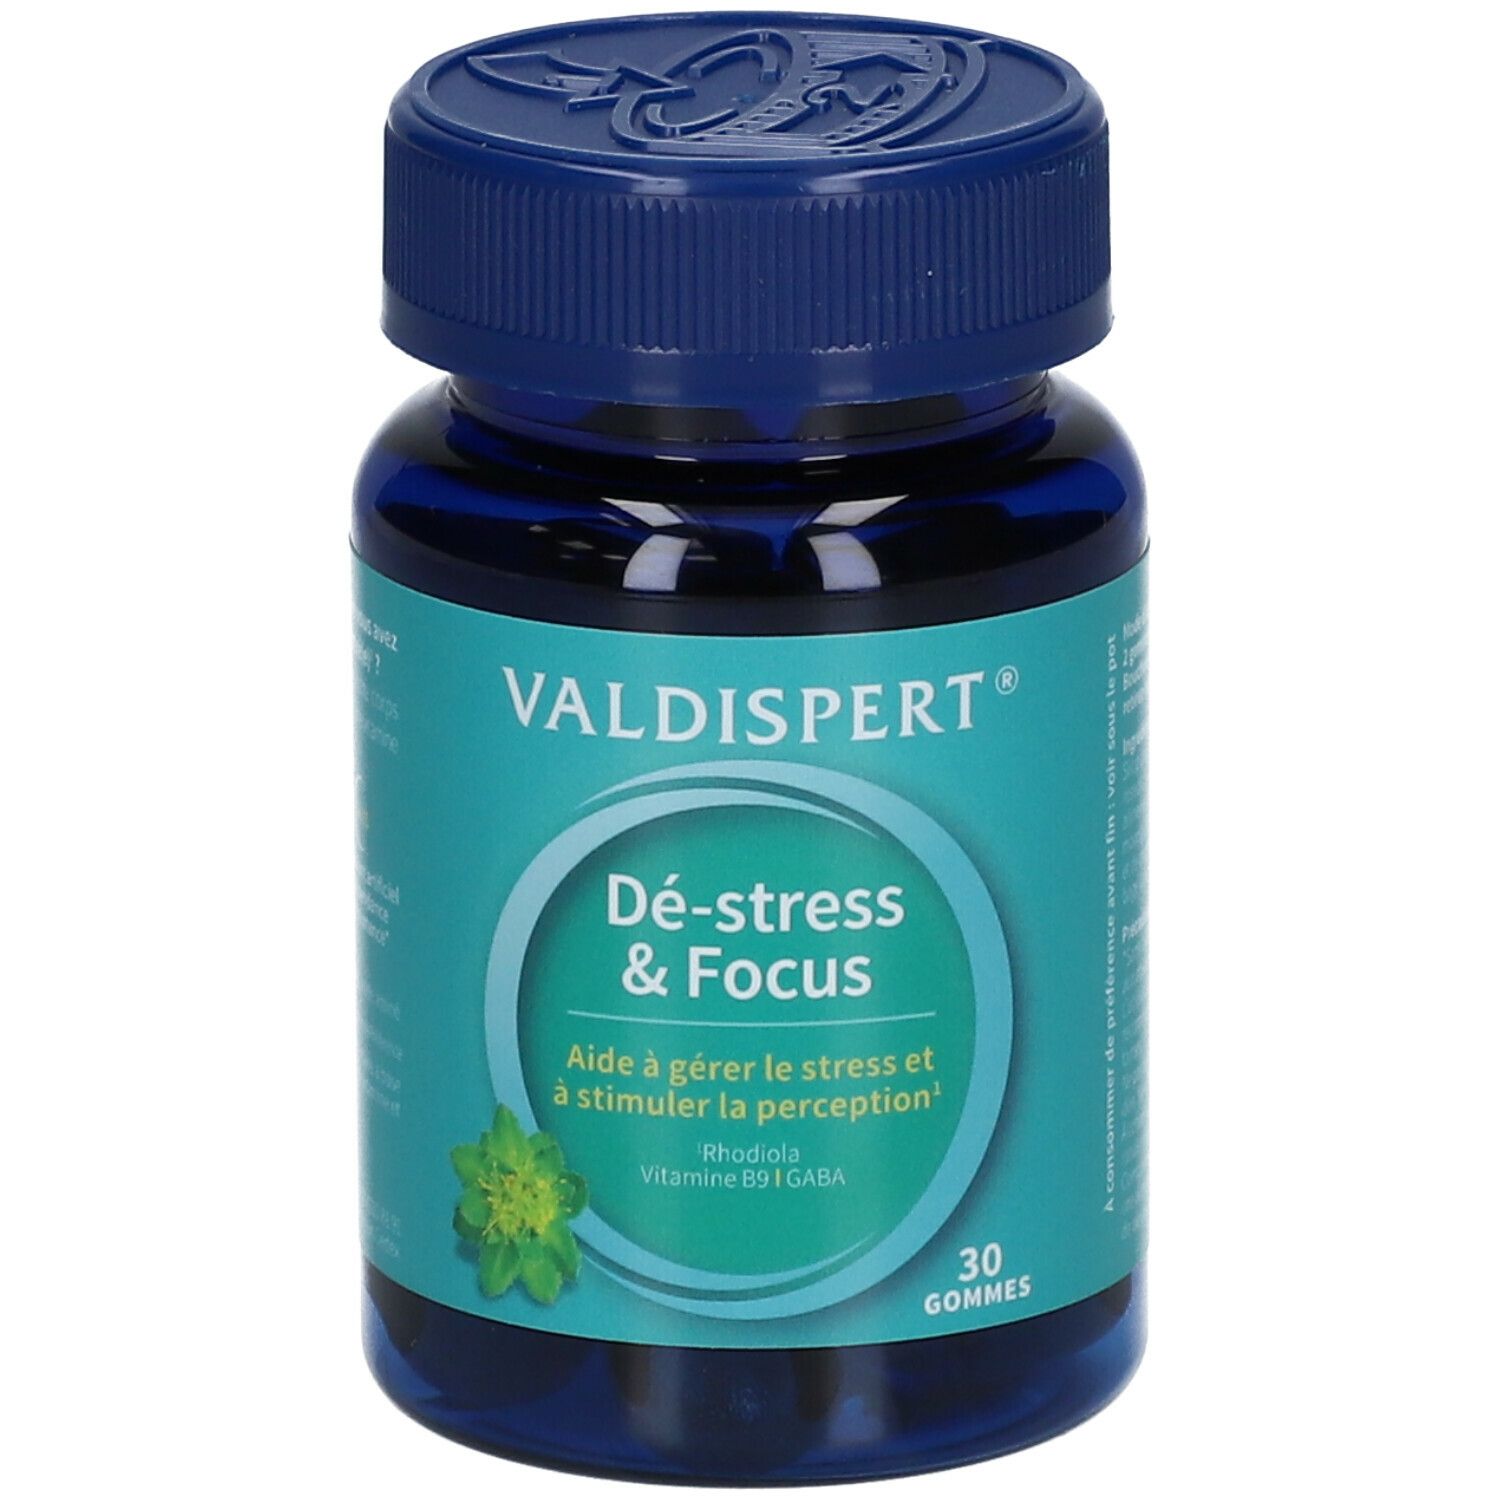 Valdispert® Dé-stress & Focus